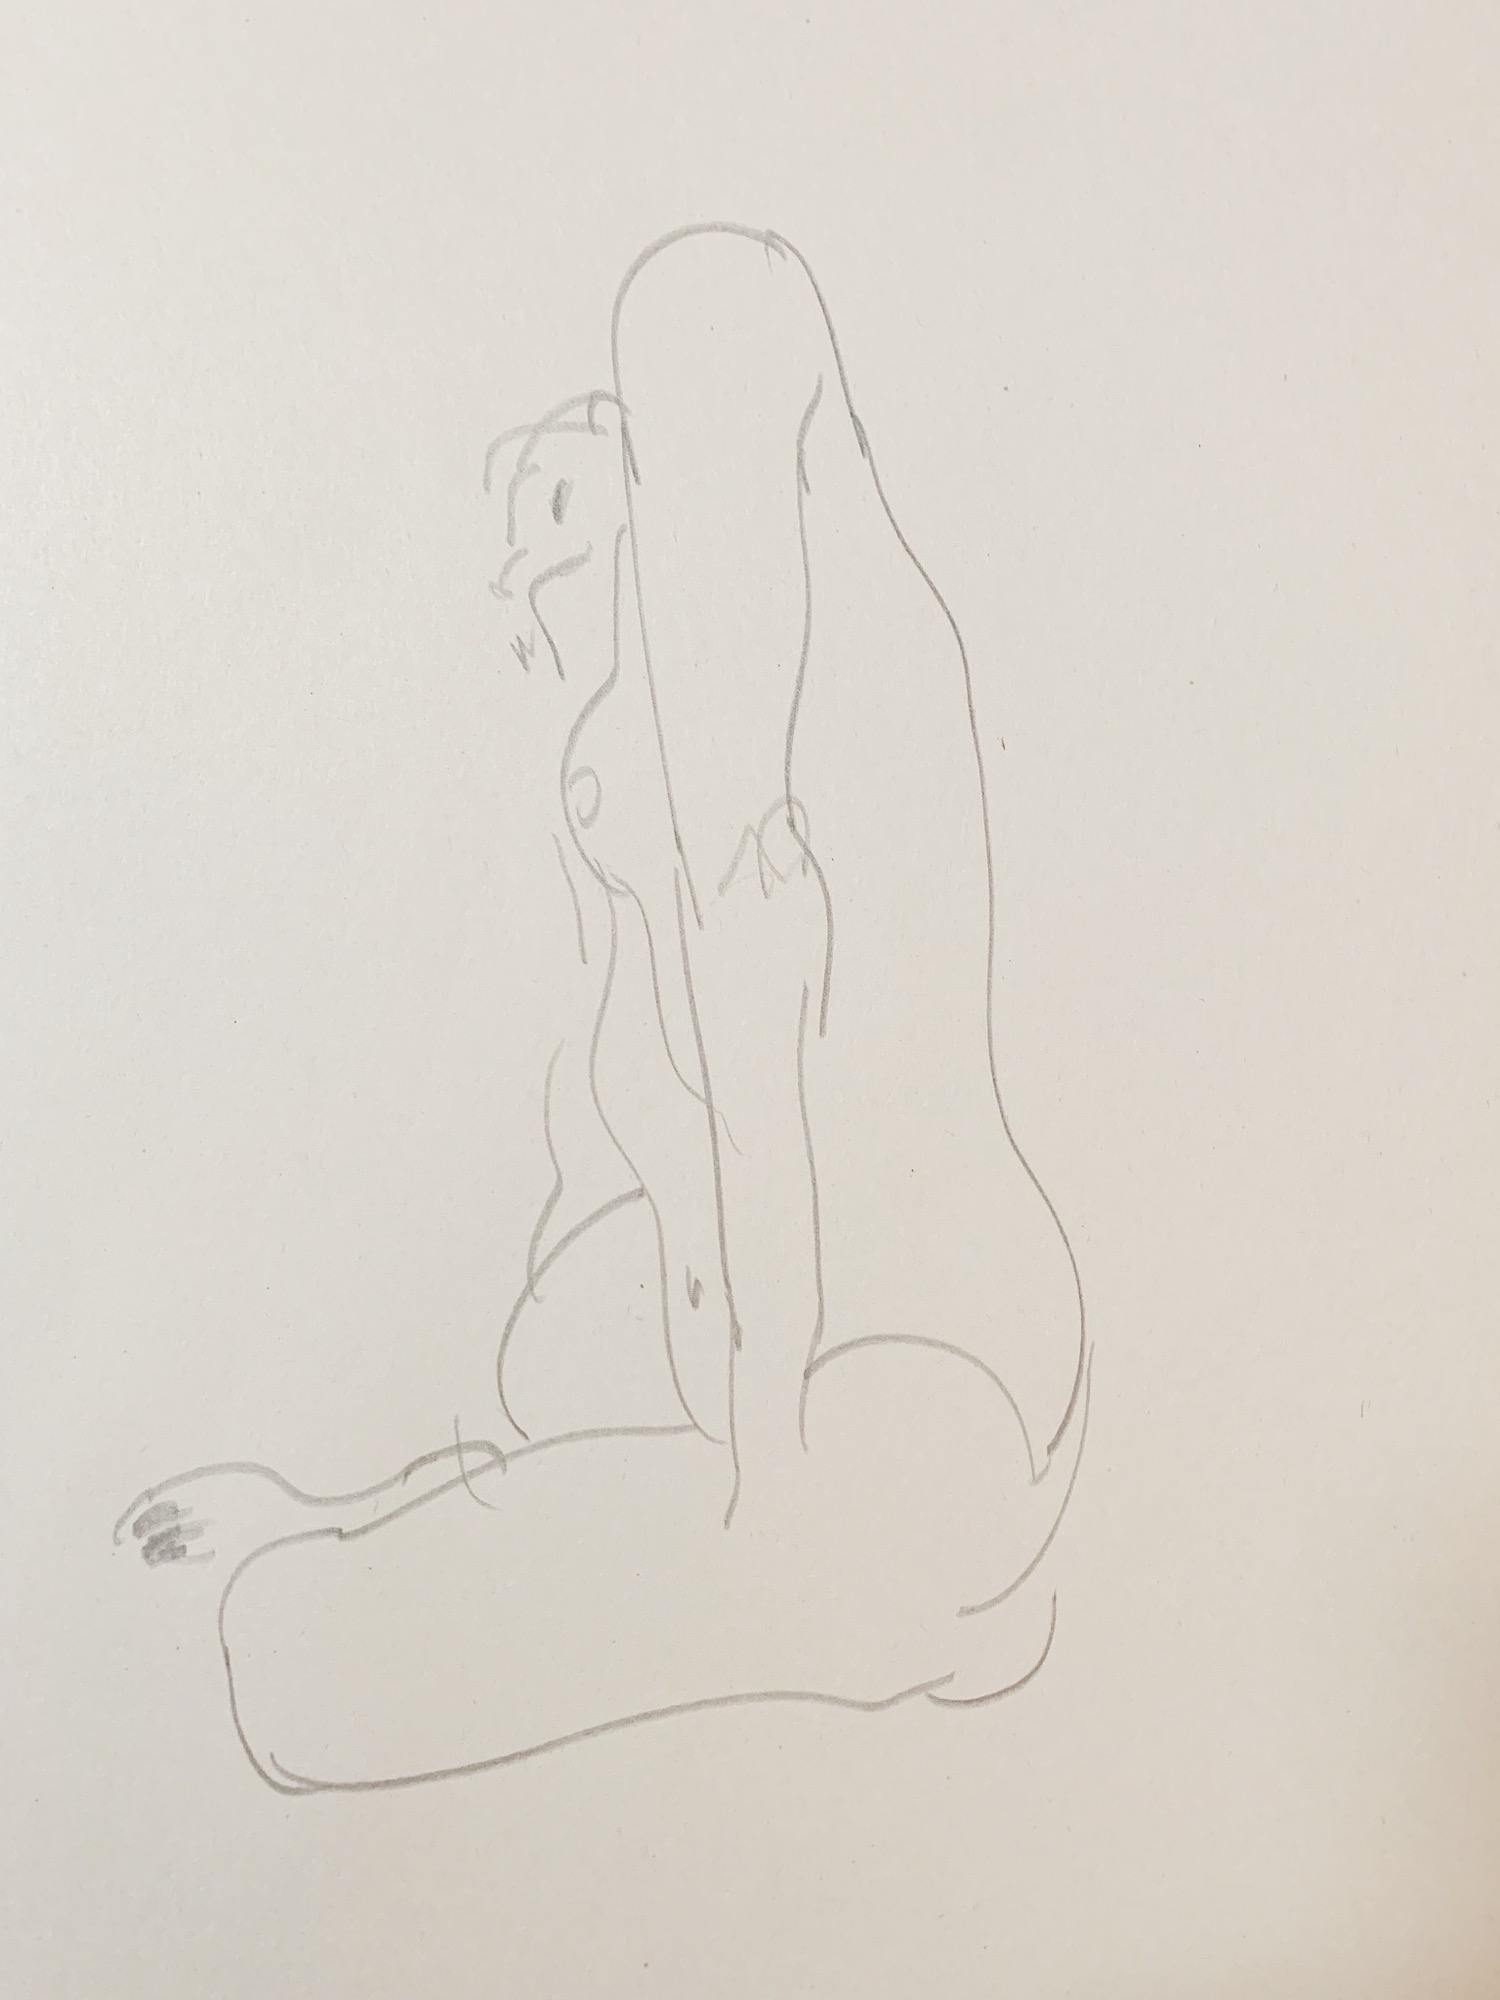 pencil sketch of a nude figure